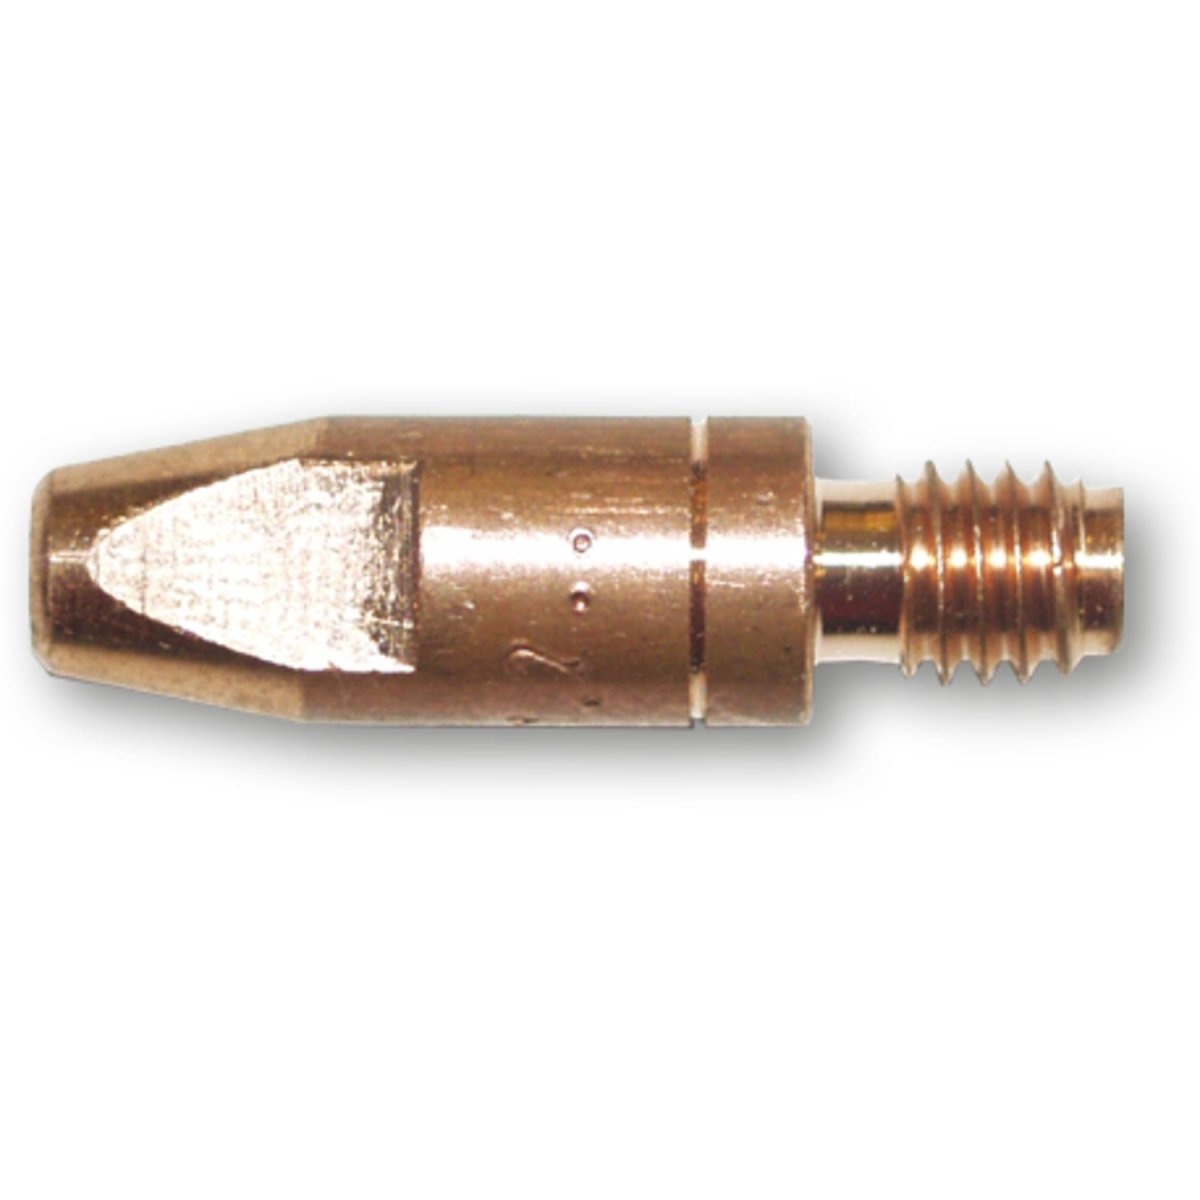 20x Kupfer Kontaktspitze Stromdüsen Contact Tip für 15AK MIG/MAG 0,8/1,0mm NEU❤ 